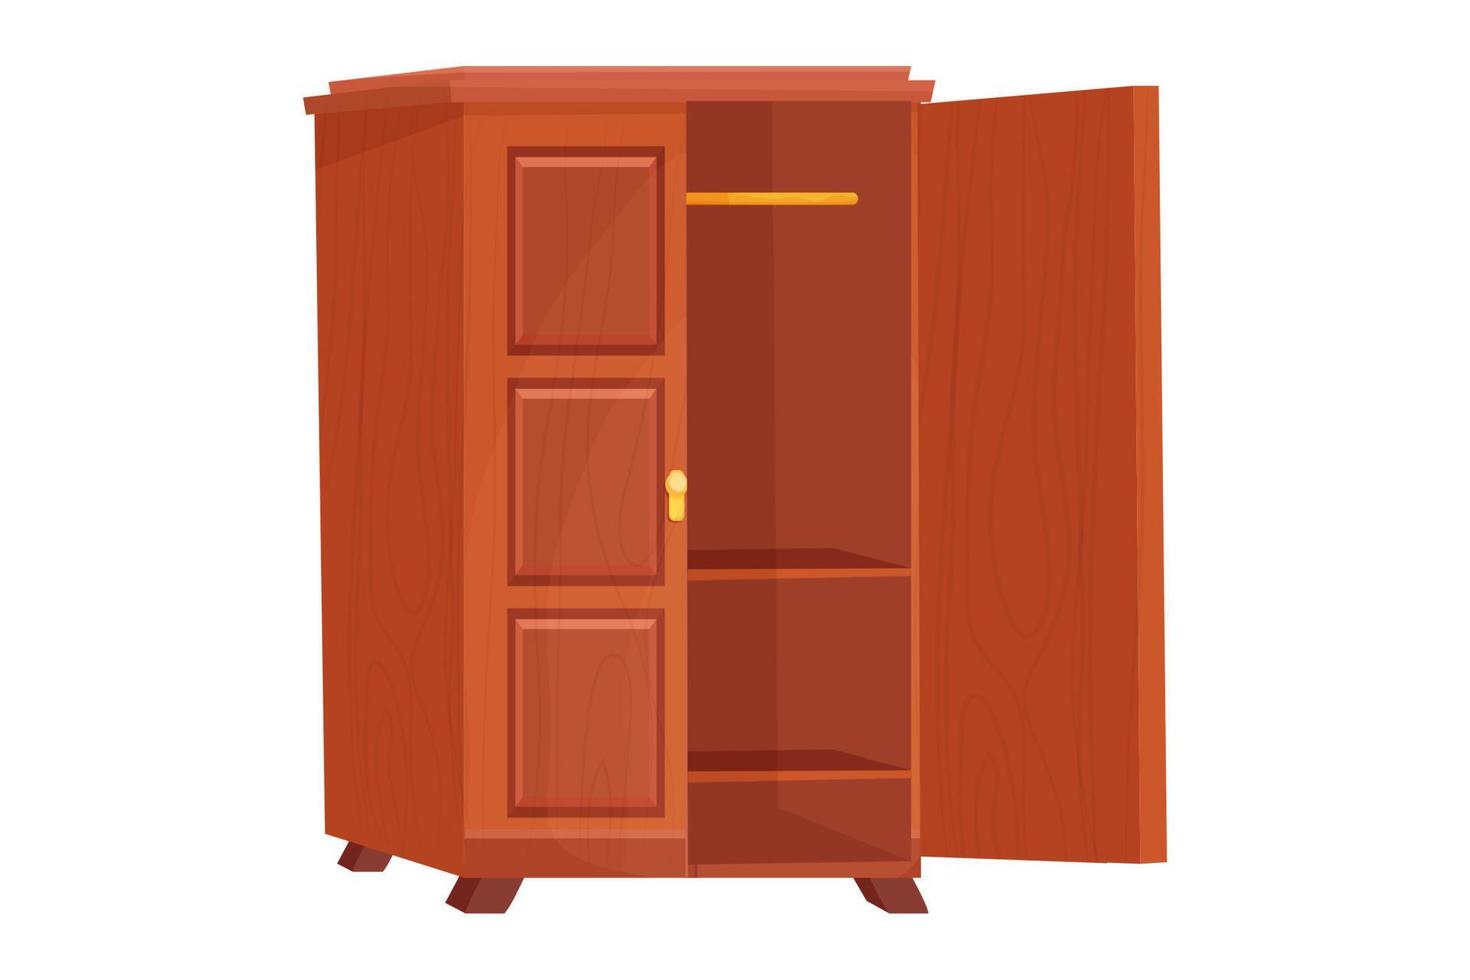 Holzschrank leere Möbel mit Regal im Cartoon-Stil isoliert auf weißem Hintergrund. Schrank, Schubladeninnenobjekt. Vektor-Illustration vektor